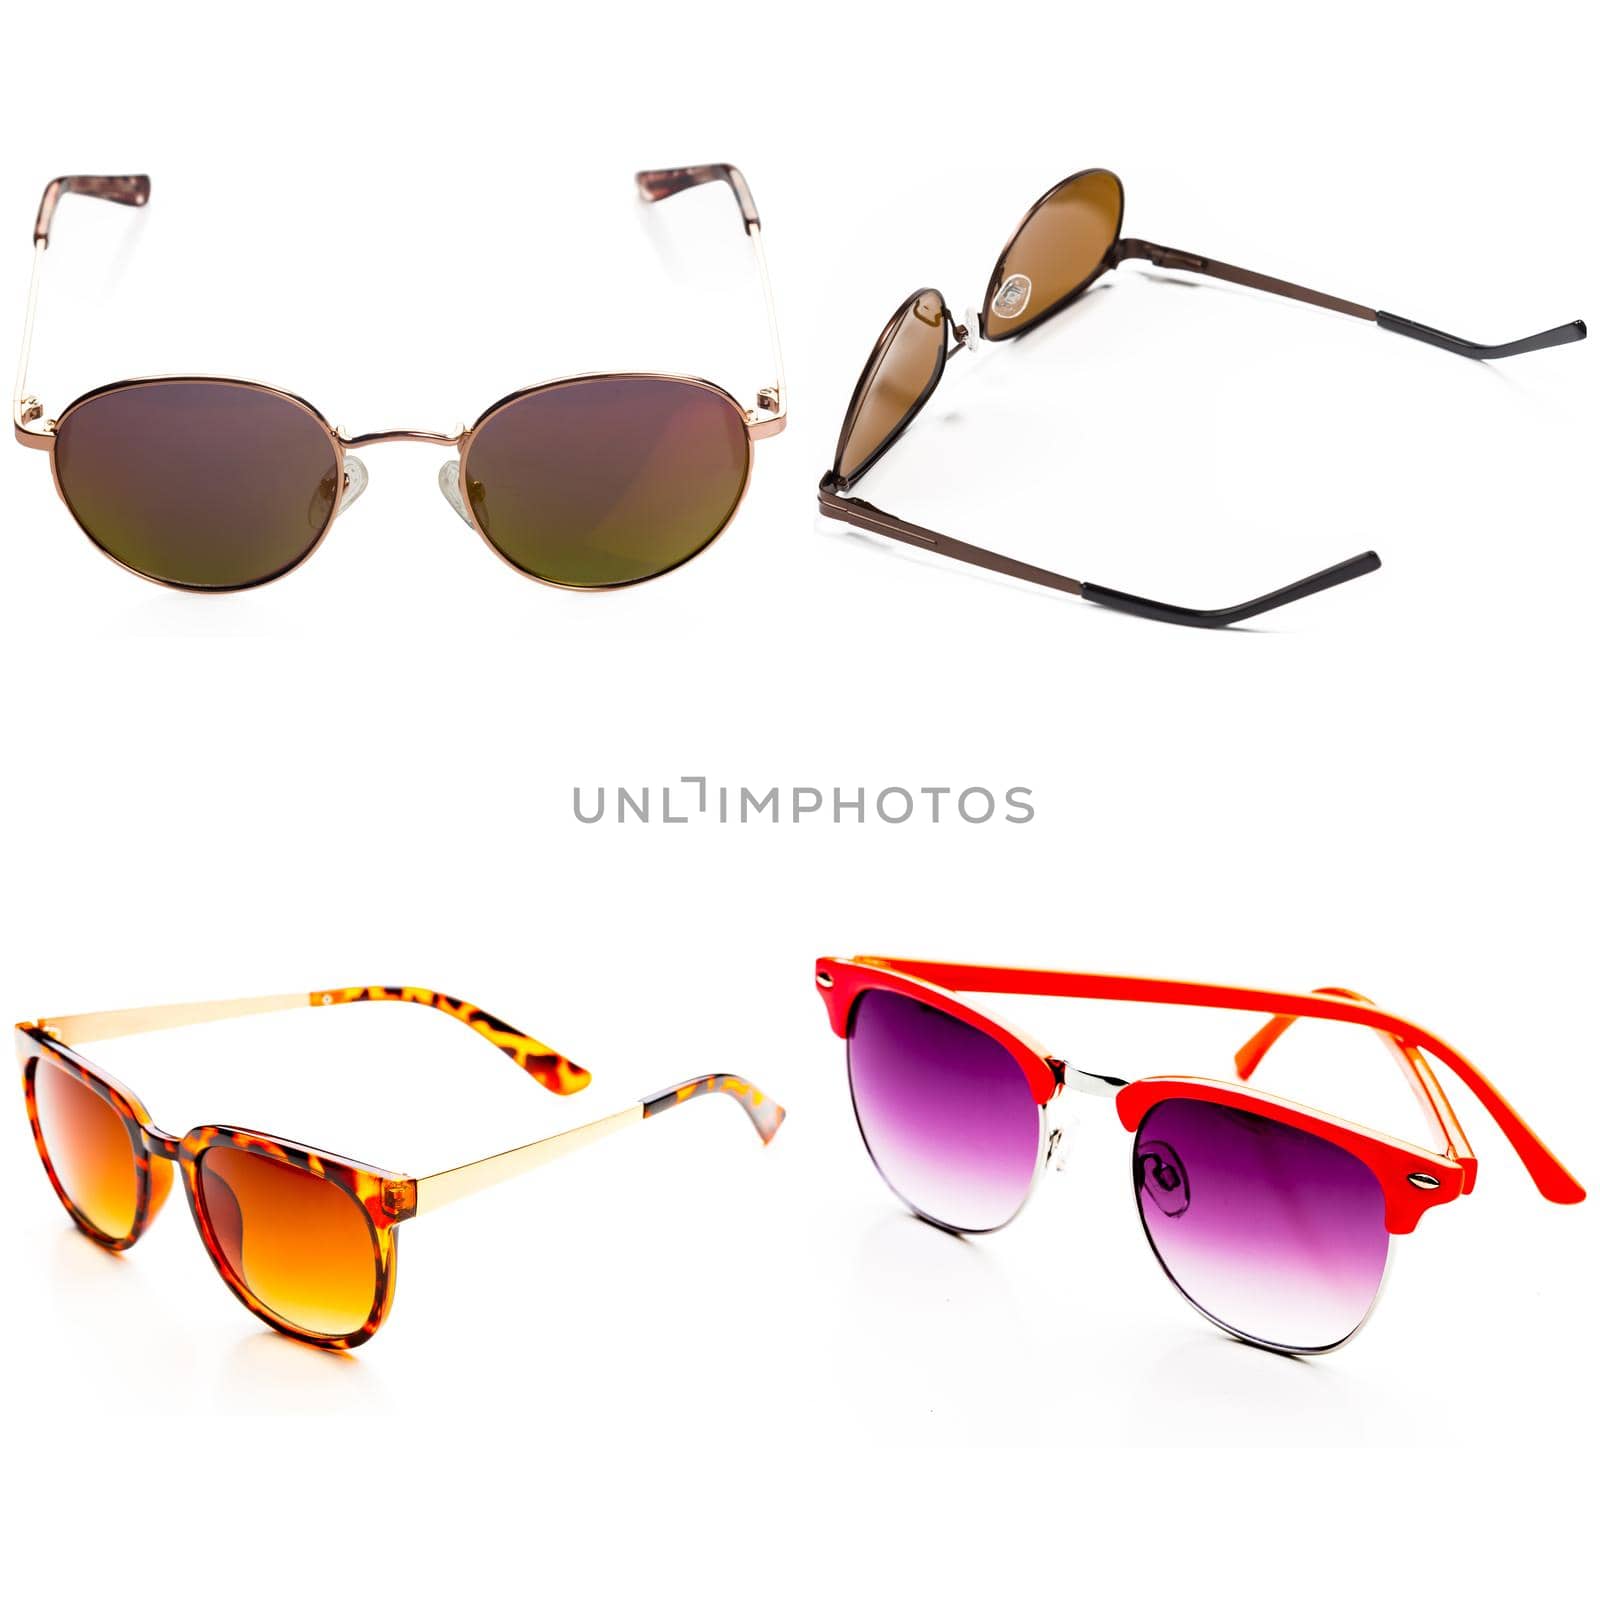 Set of sunglasses isolated on white background